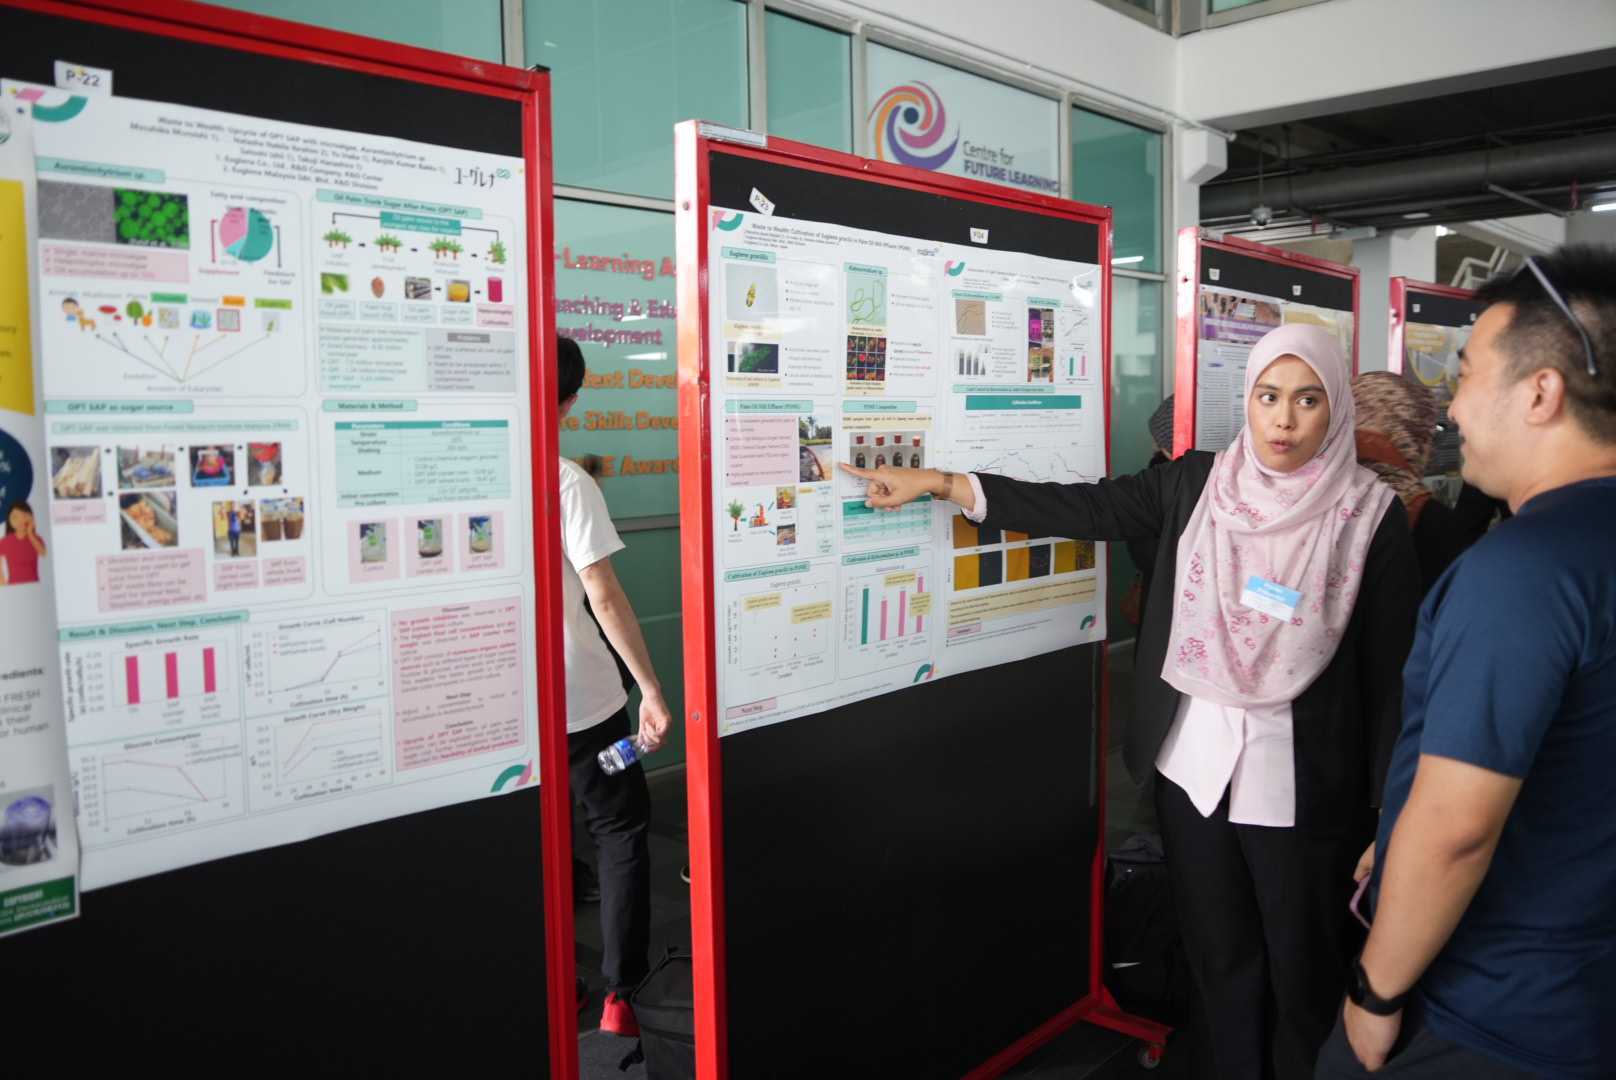 Euglena Malaysia team participated in Hyper Interdisciplinary